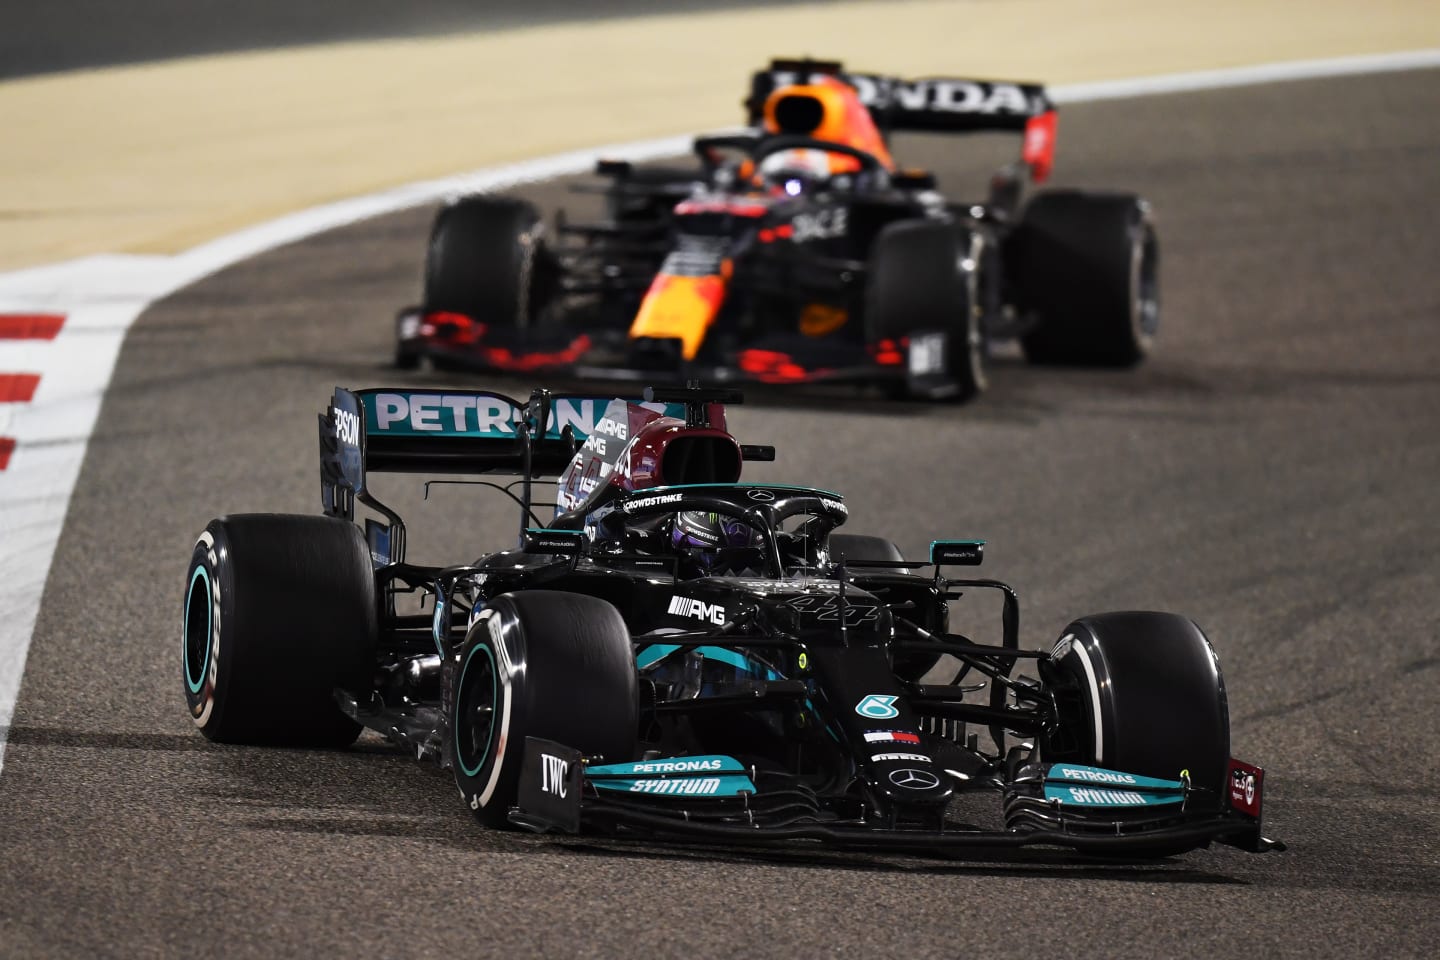 BAHRAIN, BAHRAIN - MARCH 28: Lewis Hamilton of Great Britain driving the (44) Mercedes AMG Petronas